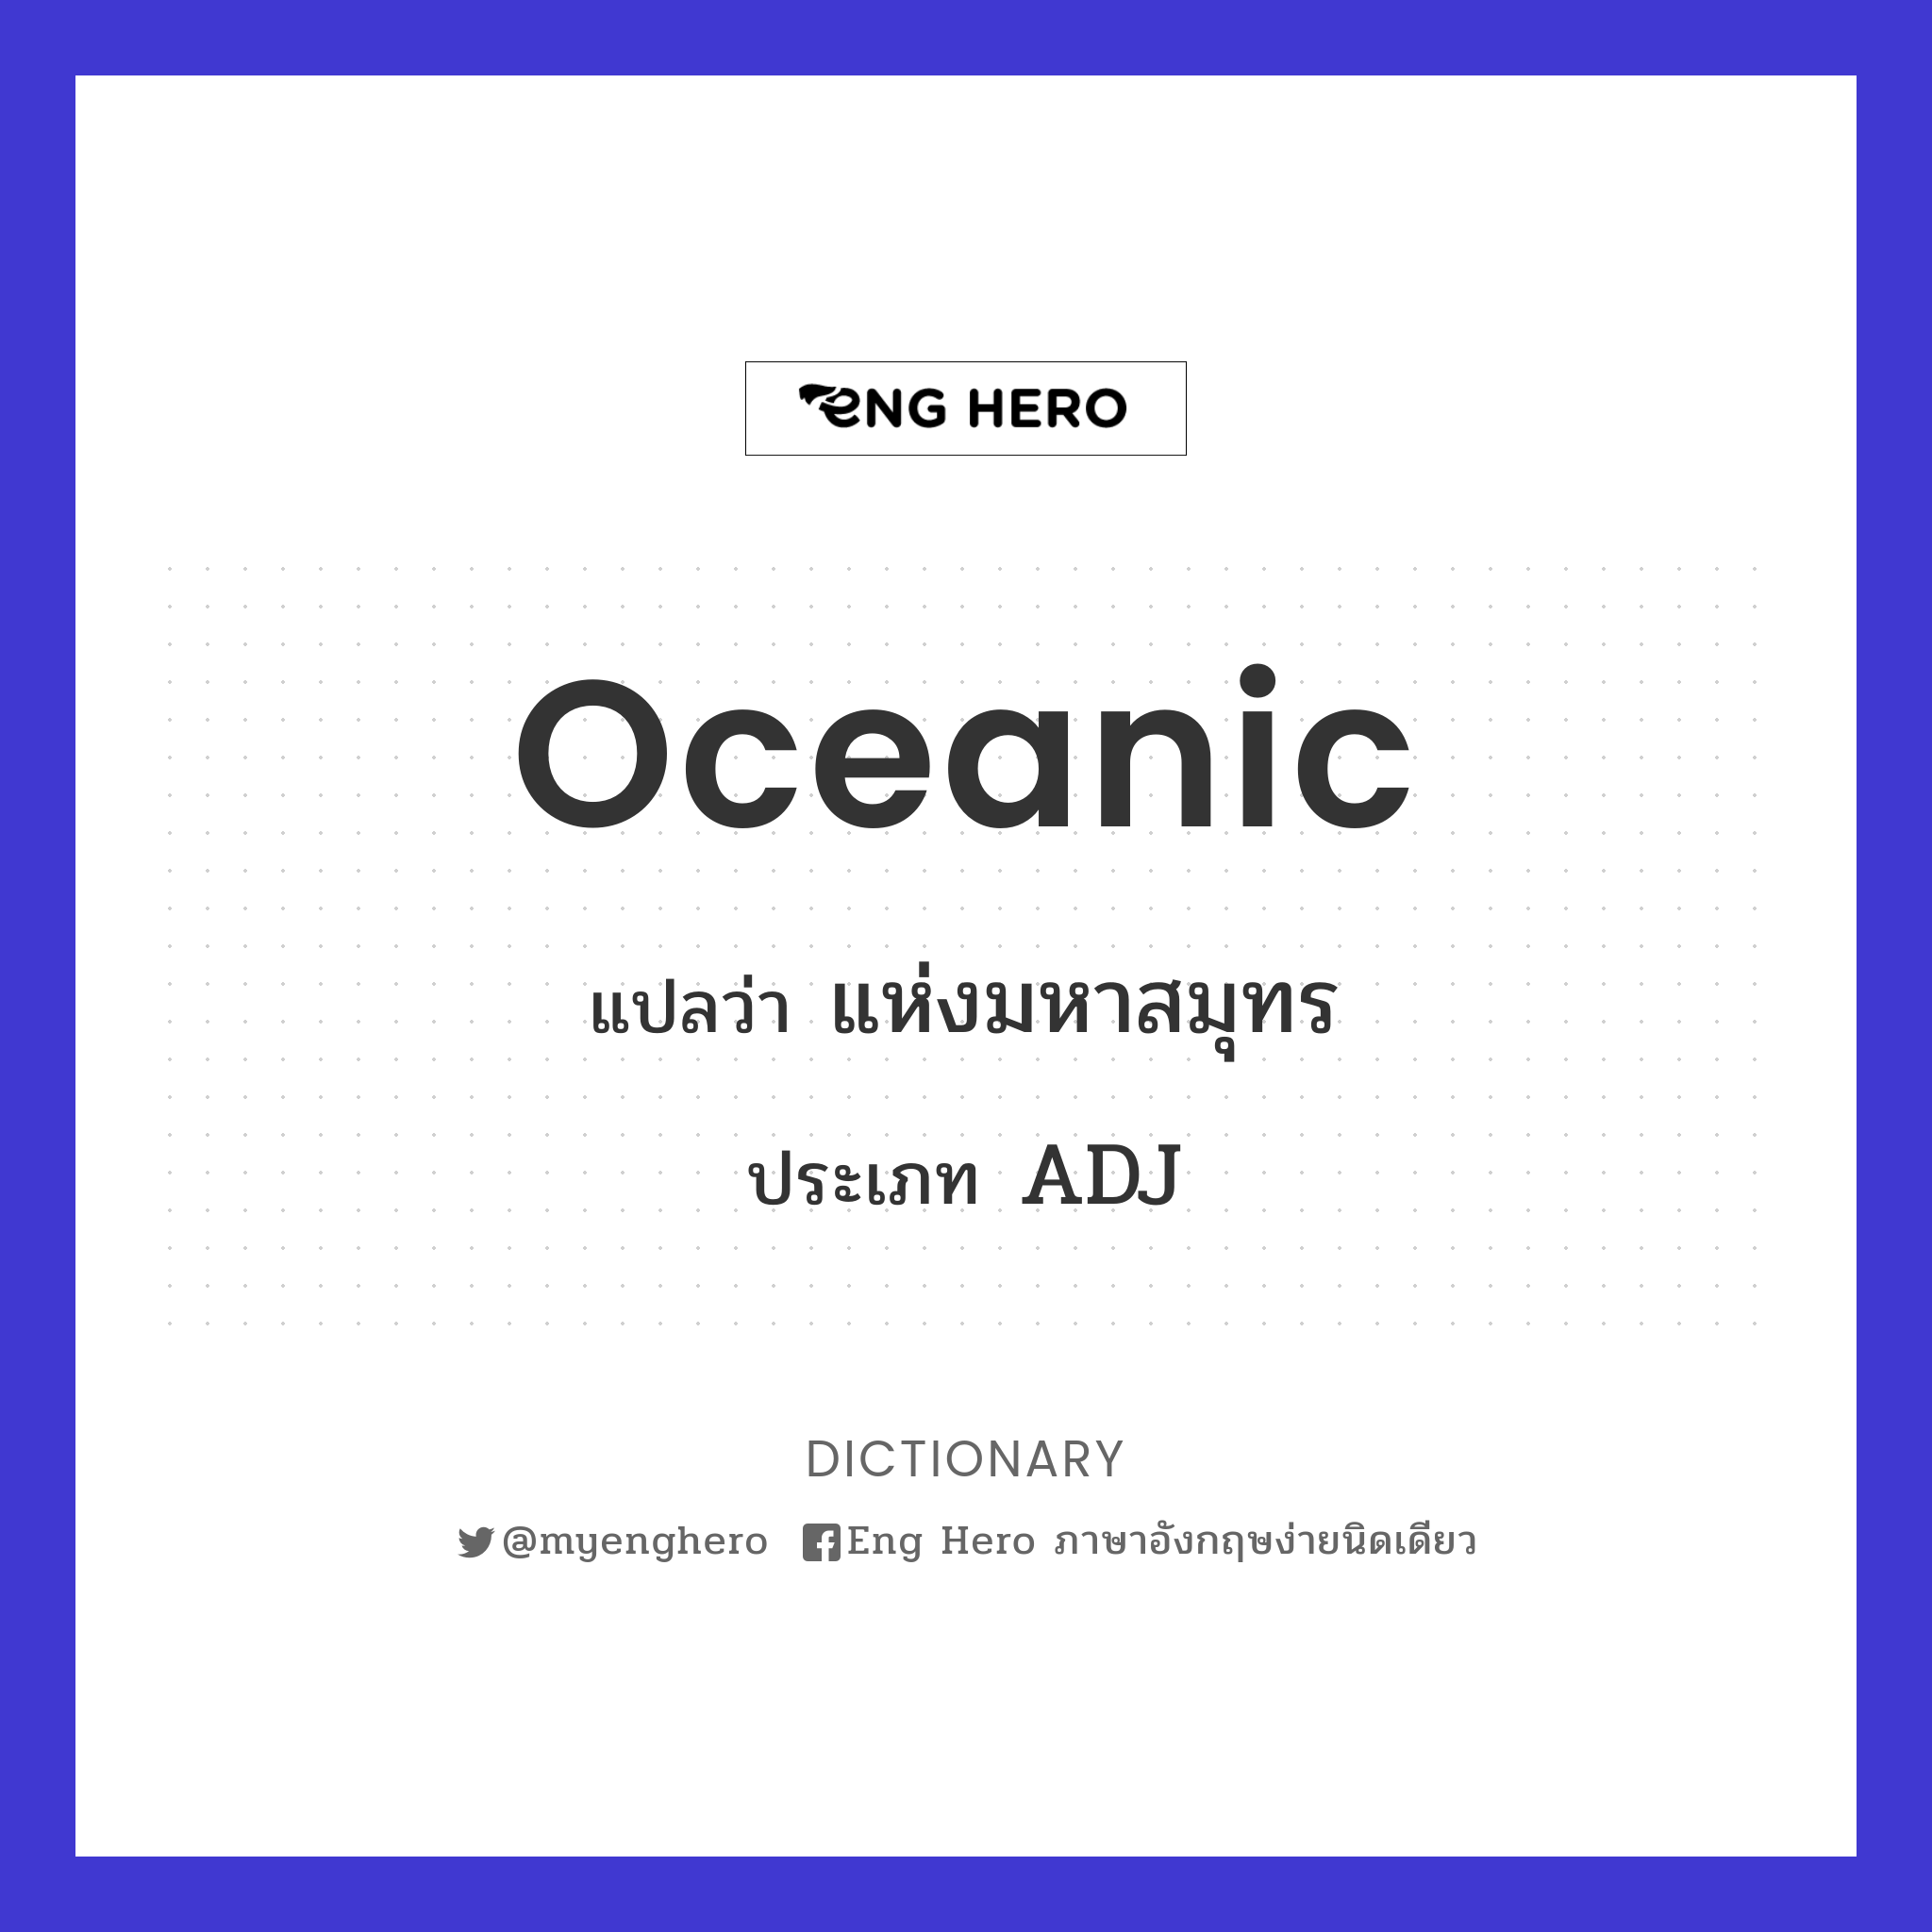 oceanic